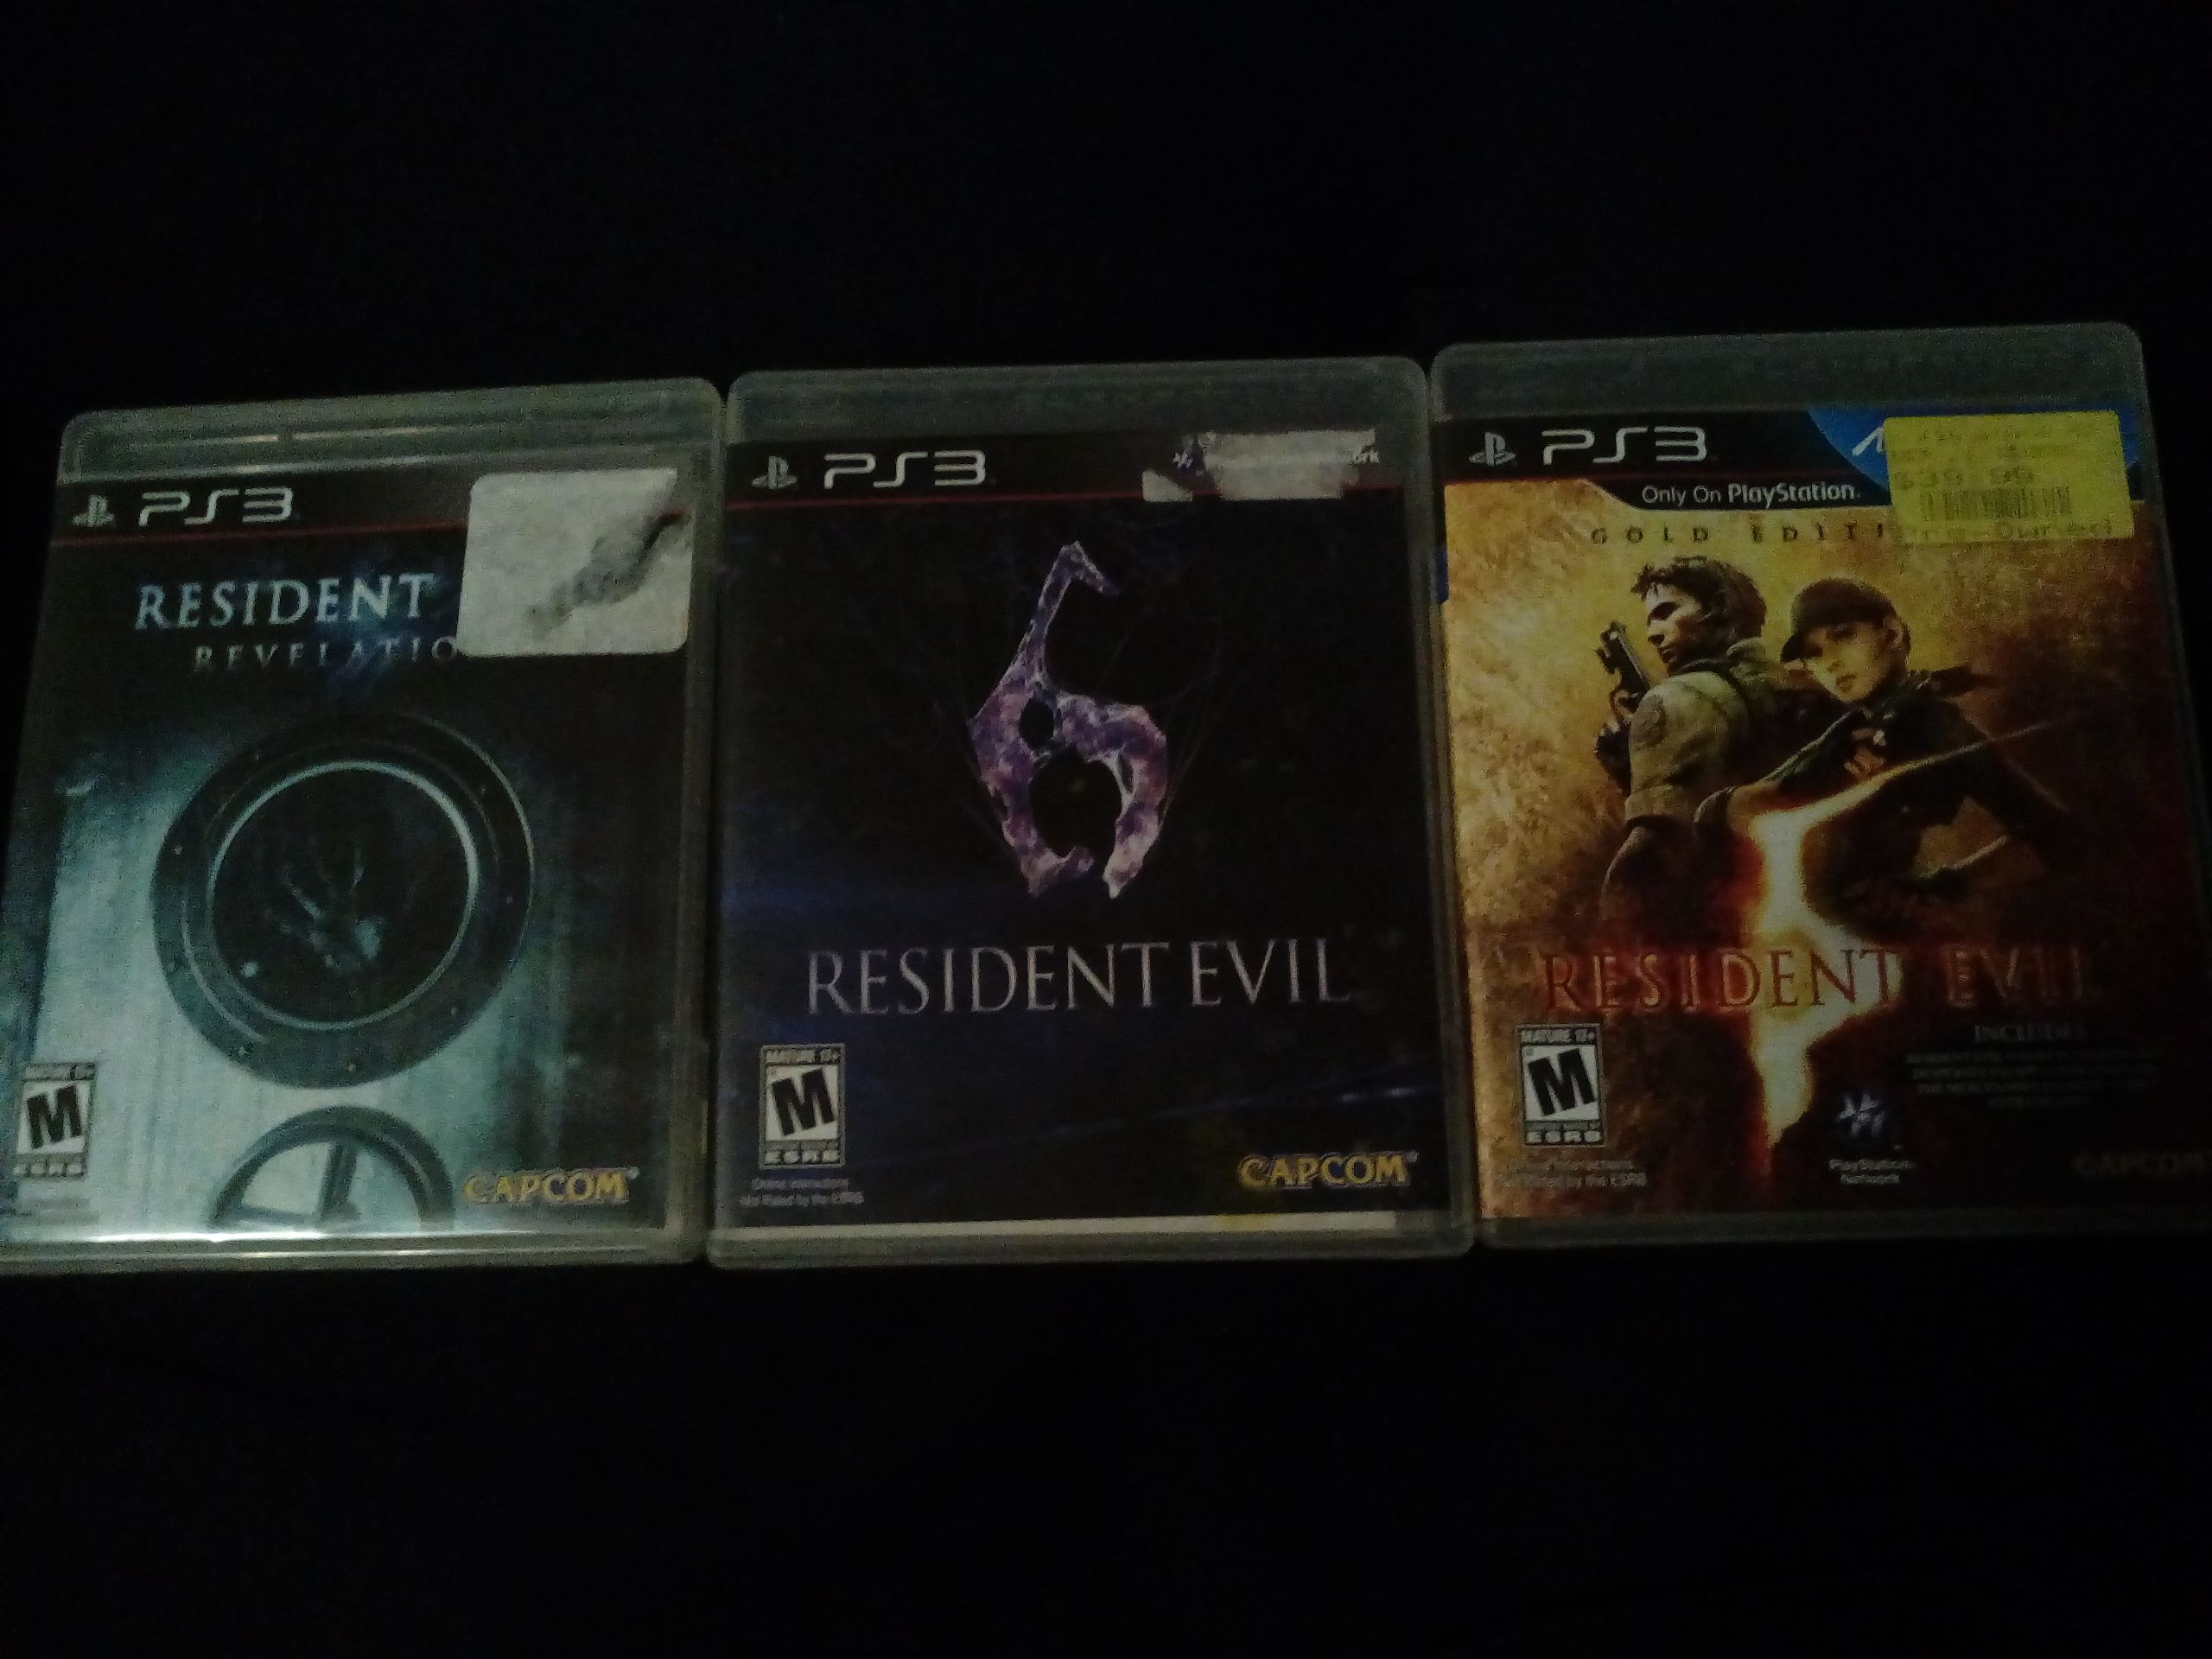 Resident Evil 5, Resident Evil 6, and Resident Evil, Revelations